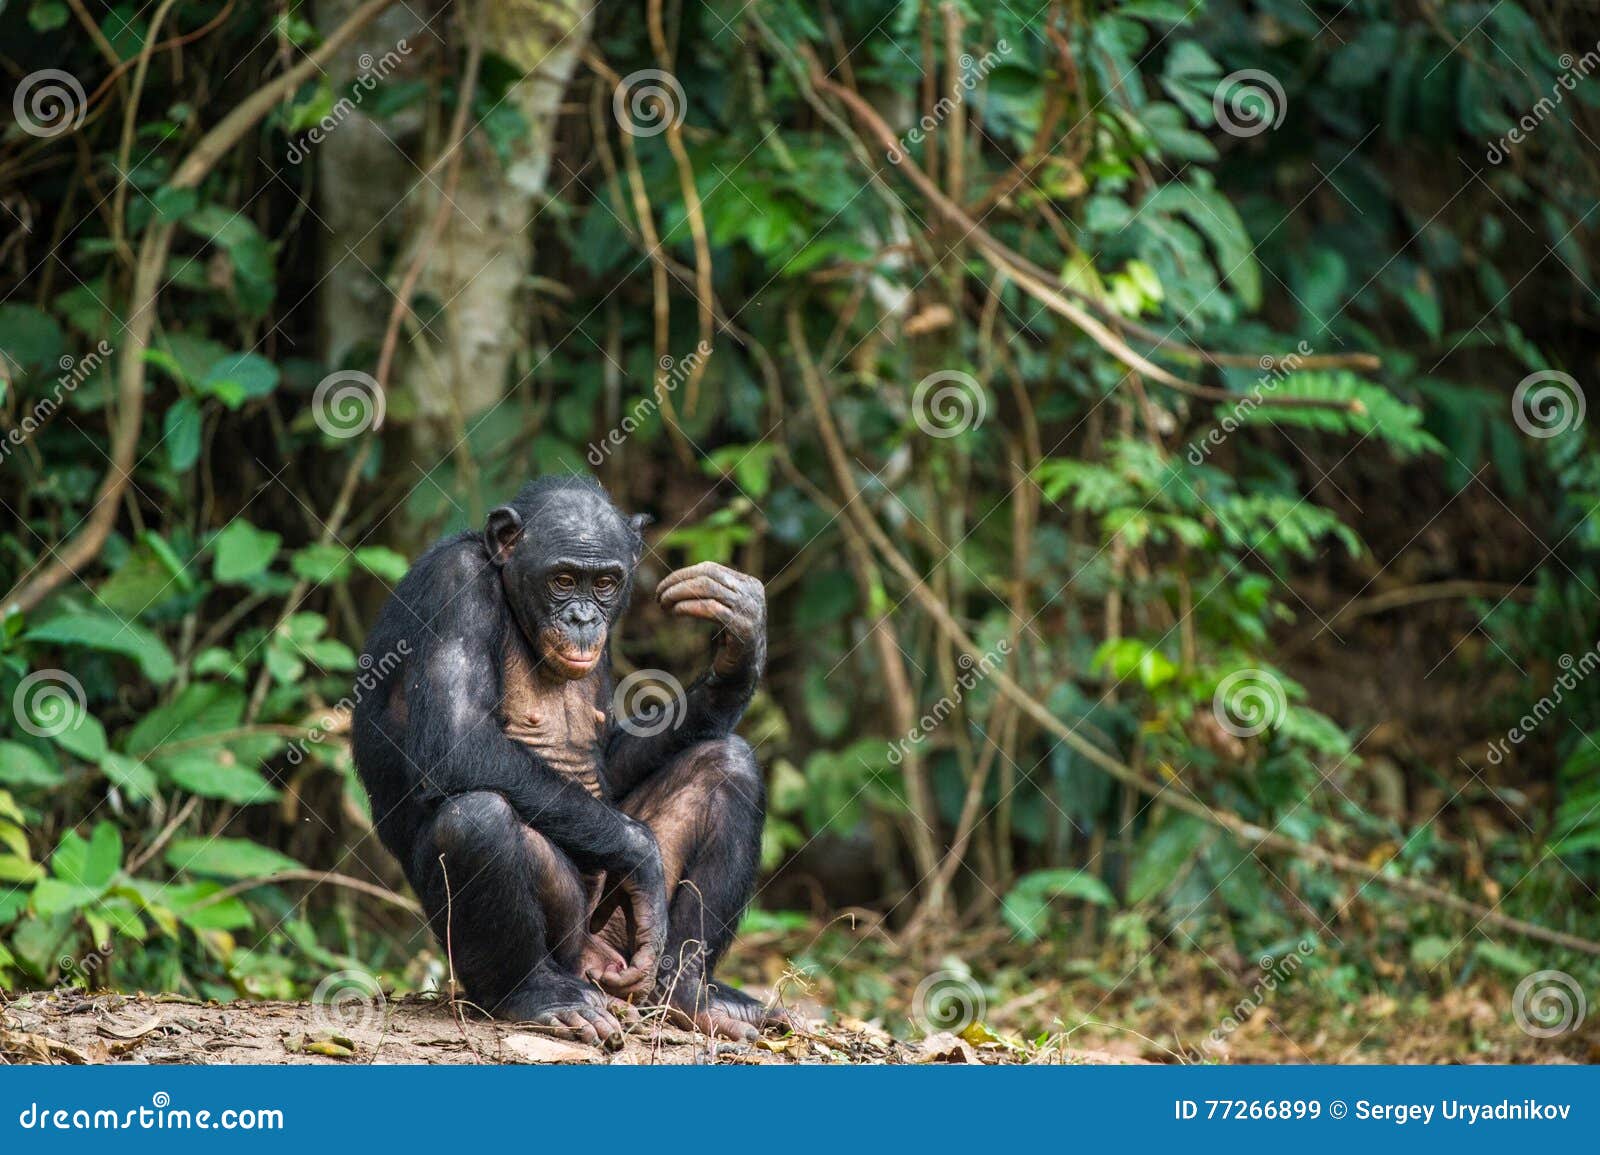 the bonobo ( pan paniscus)